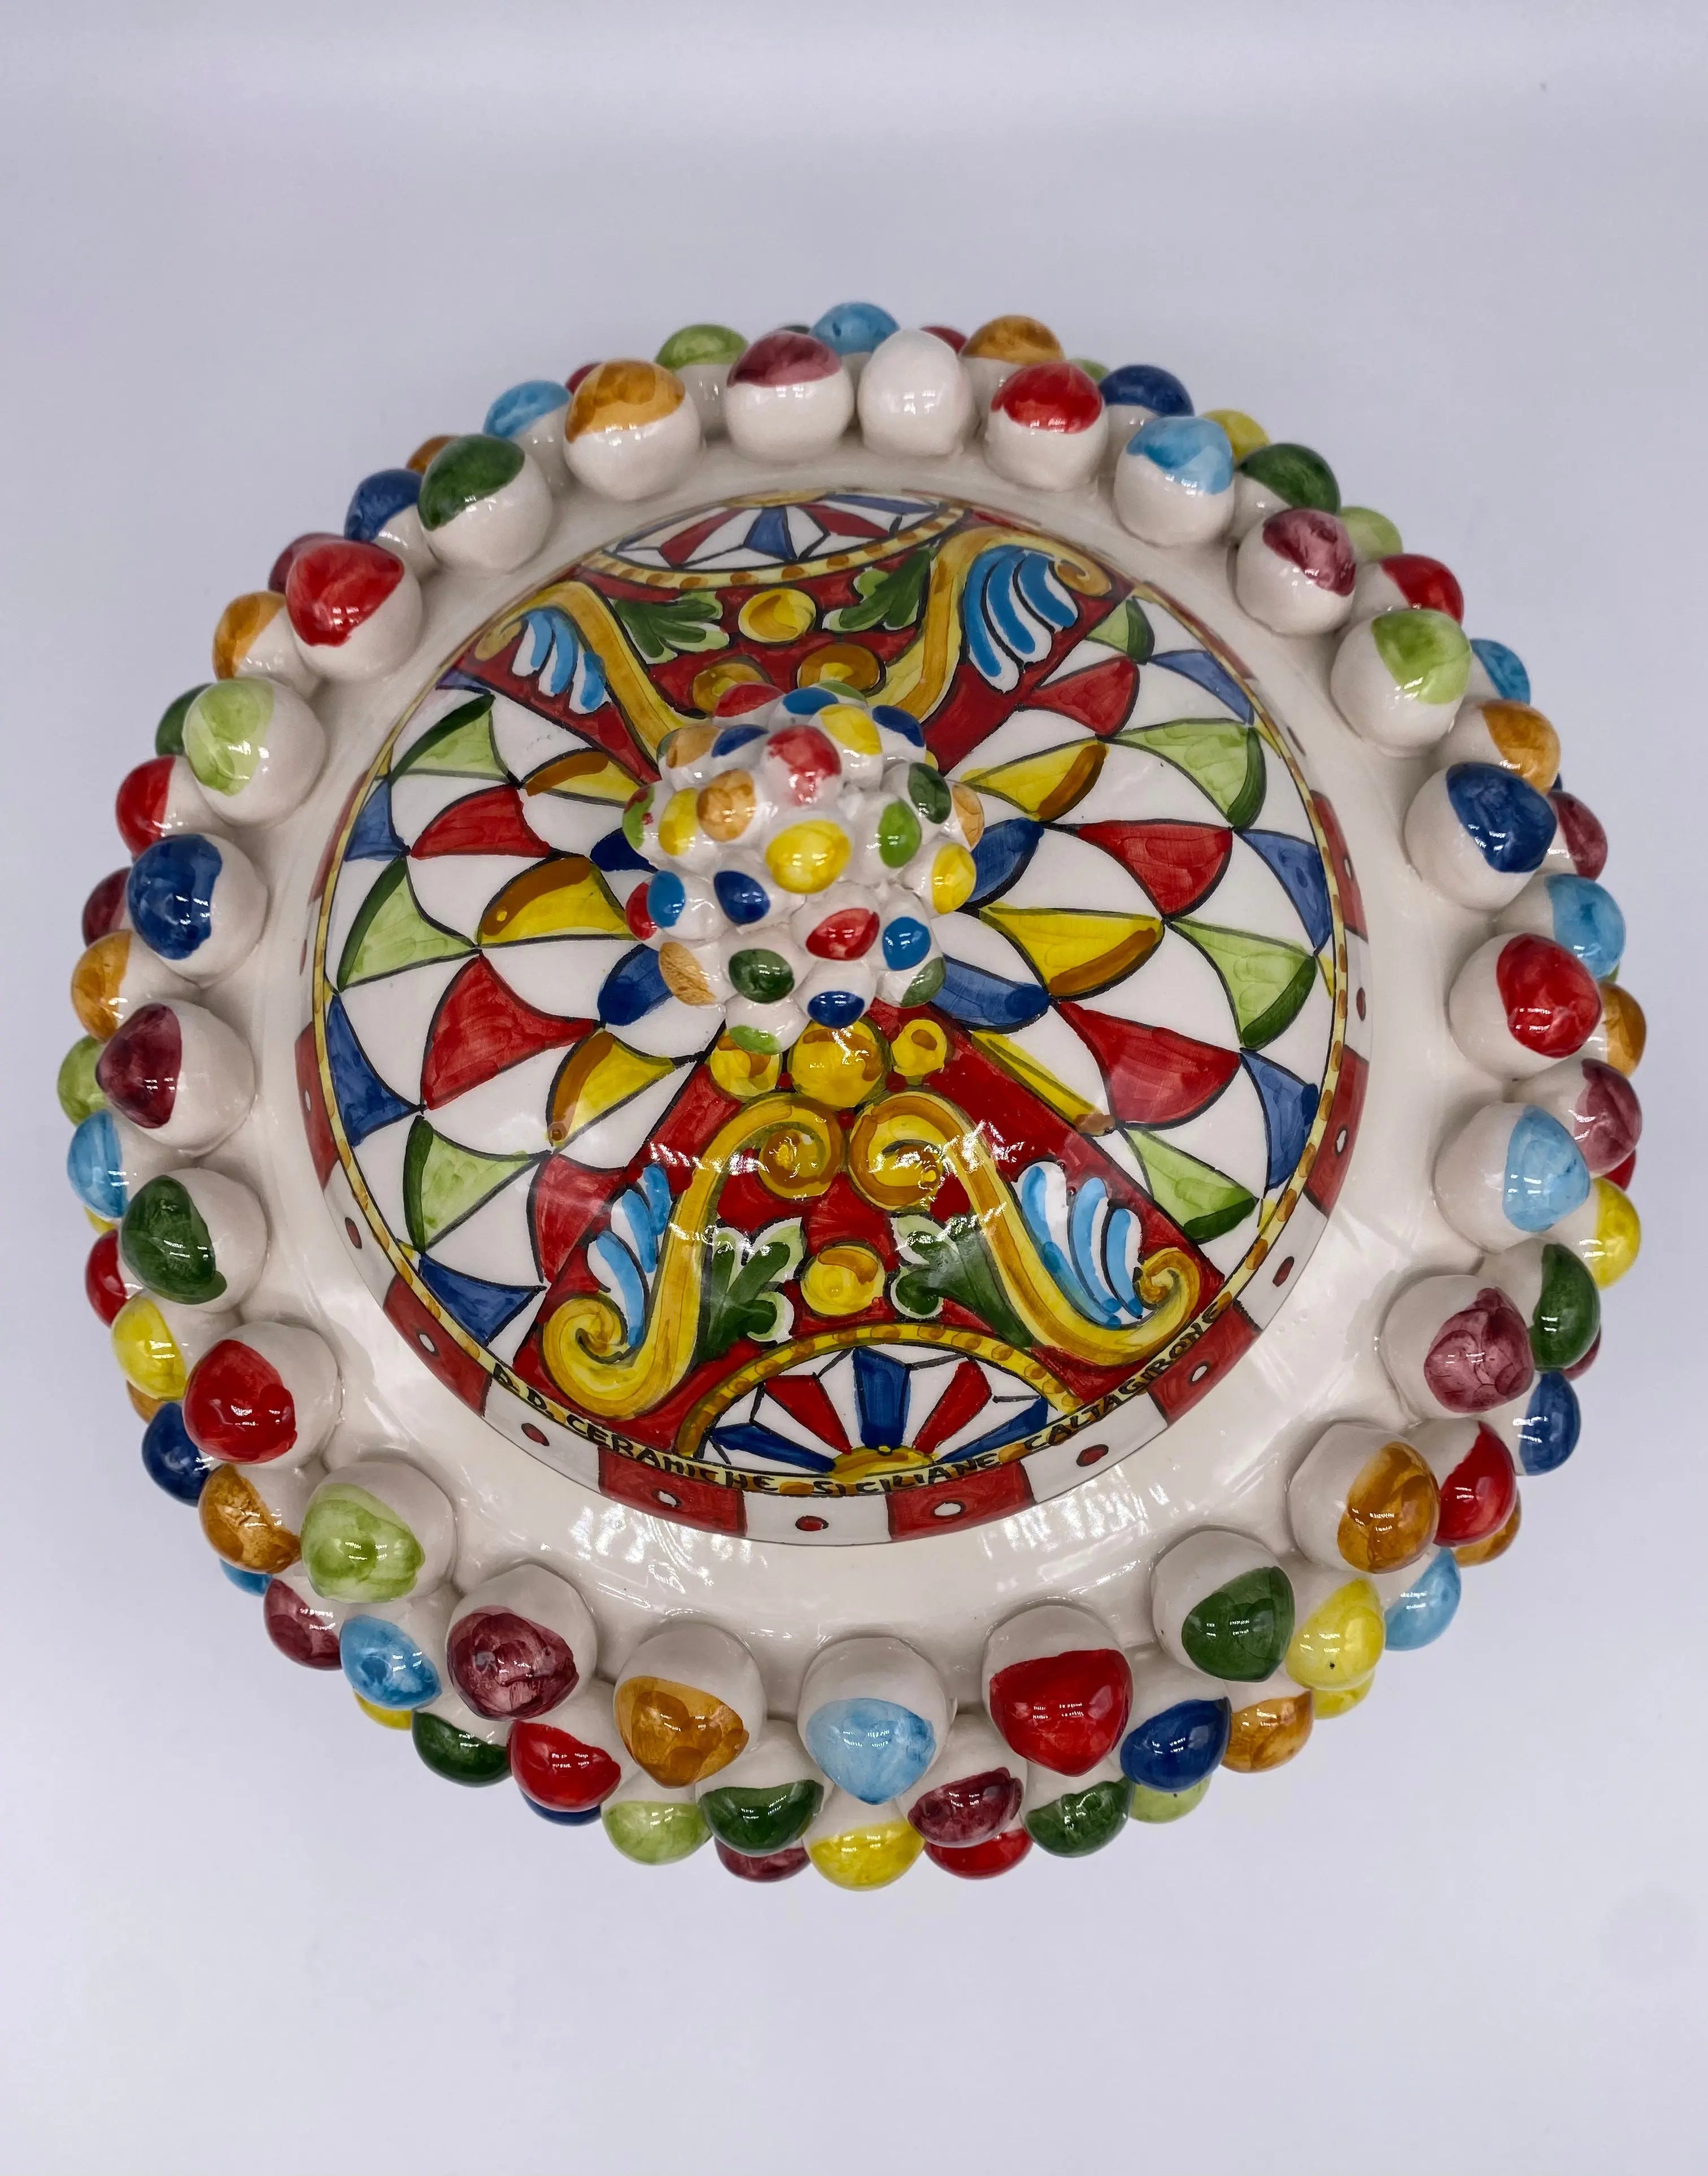 Pigna Biscottiera “Carretto” Ceramica Caltagirone cm H.23 L.25 D.14 Artigianale Multicolor DD CERAMICHE SICILIANE